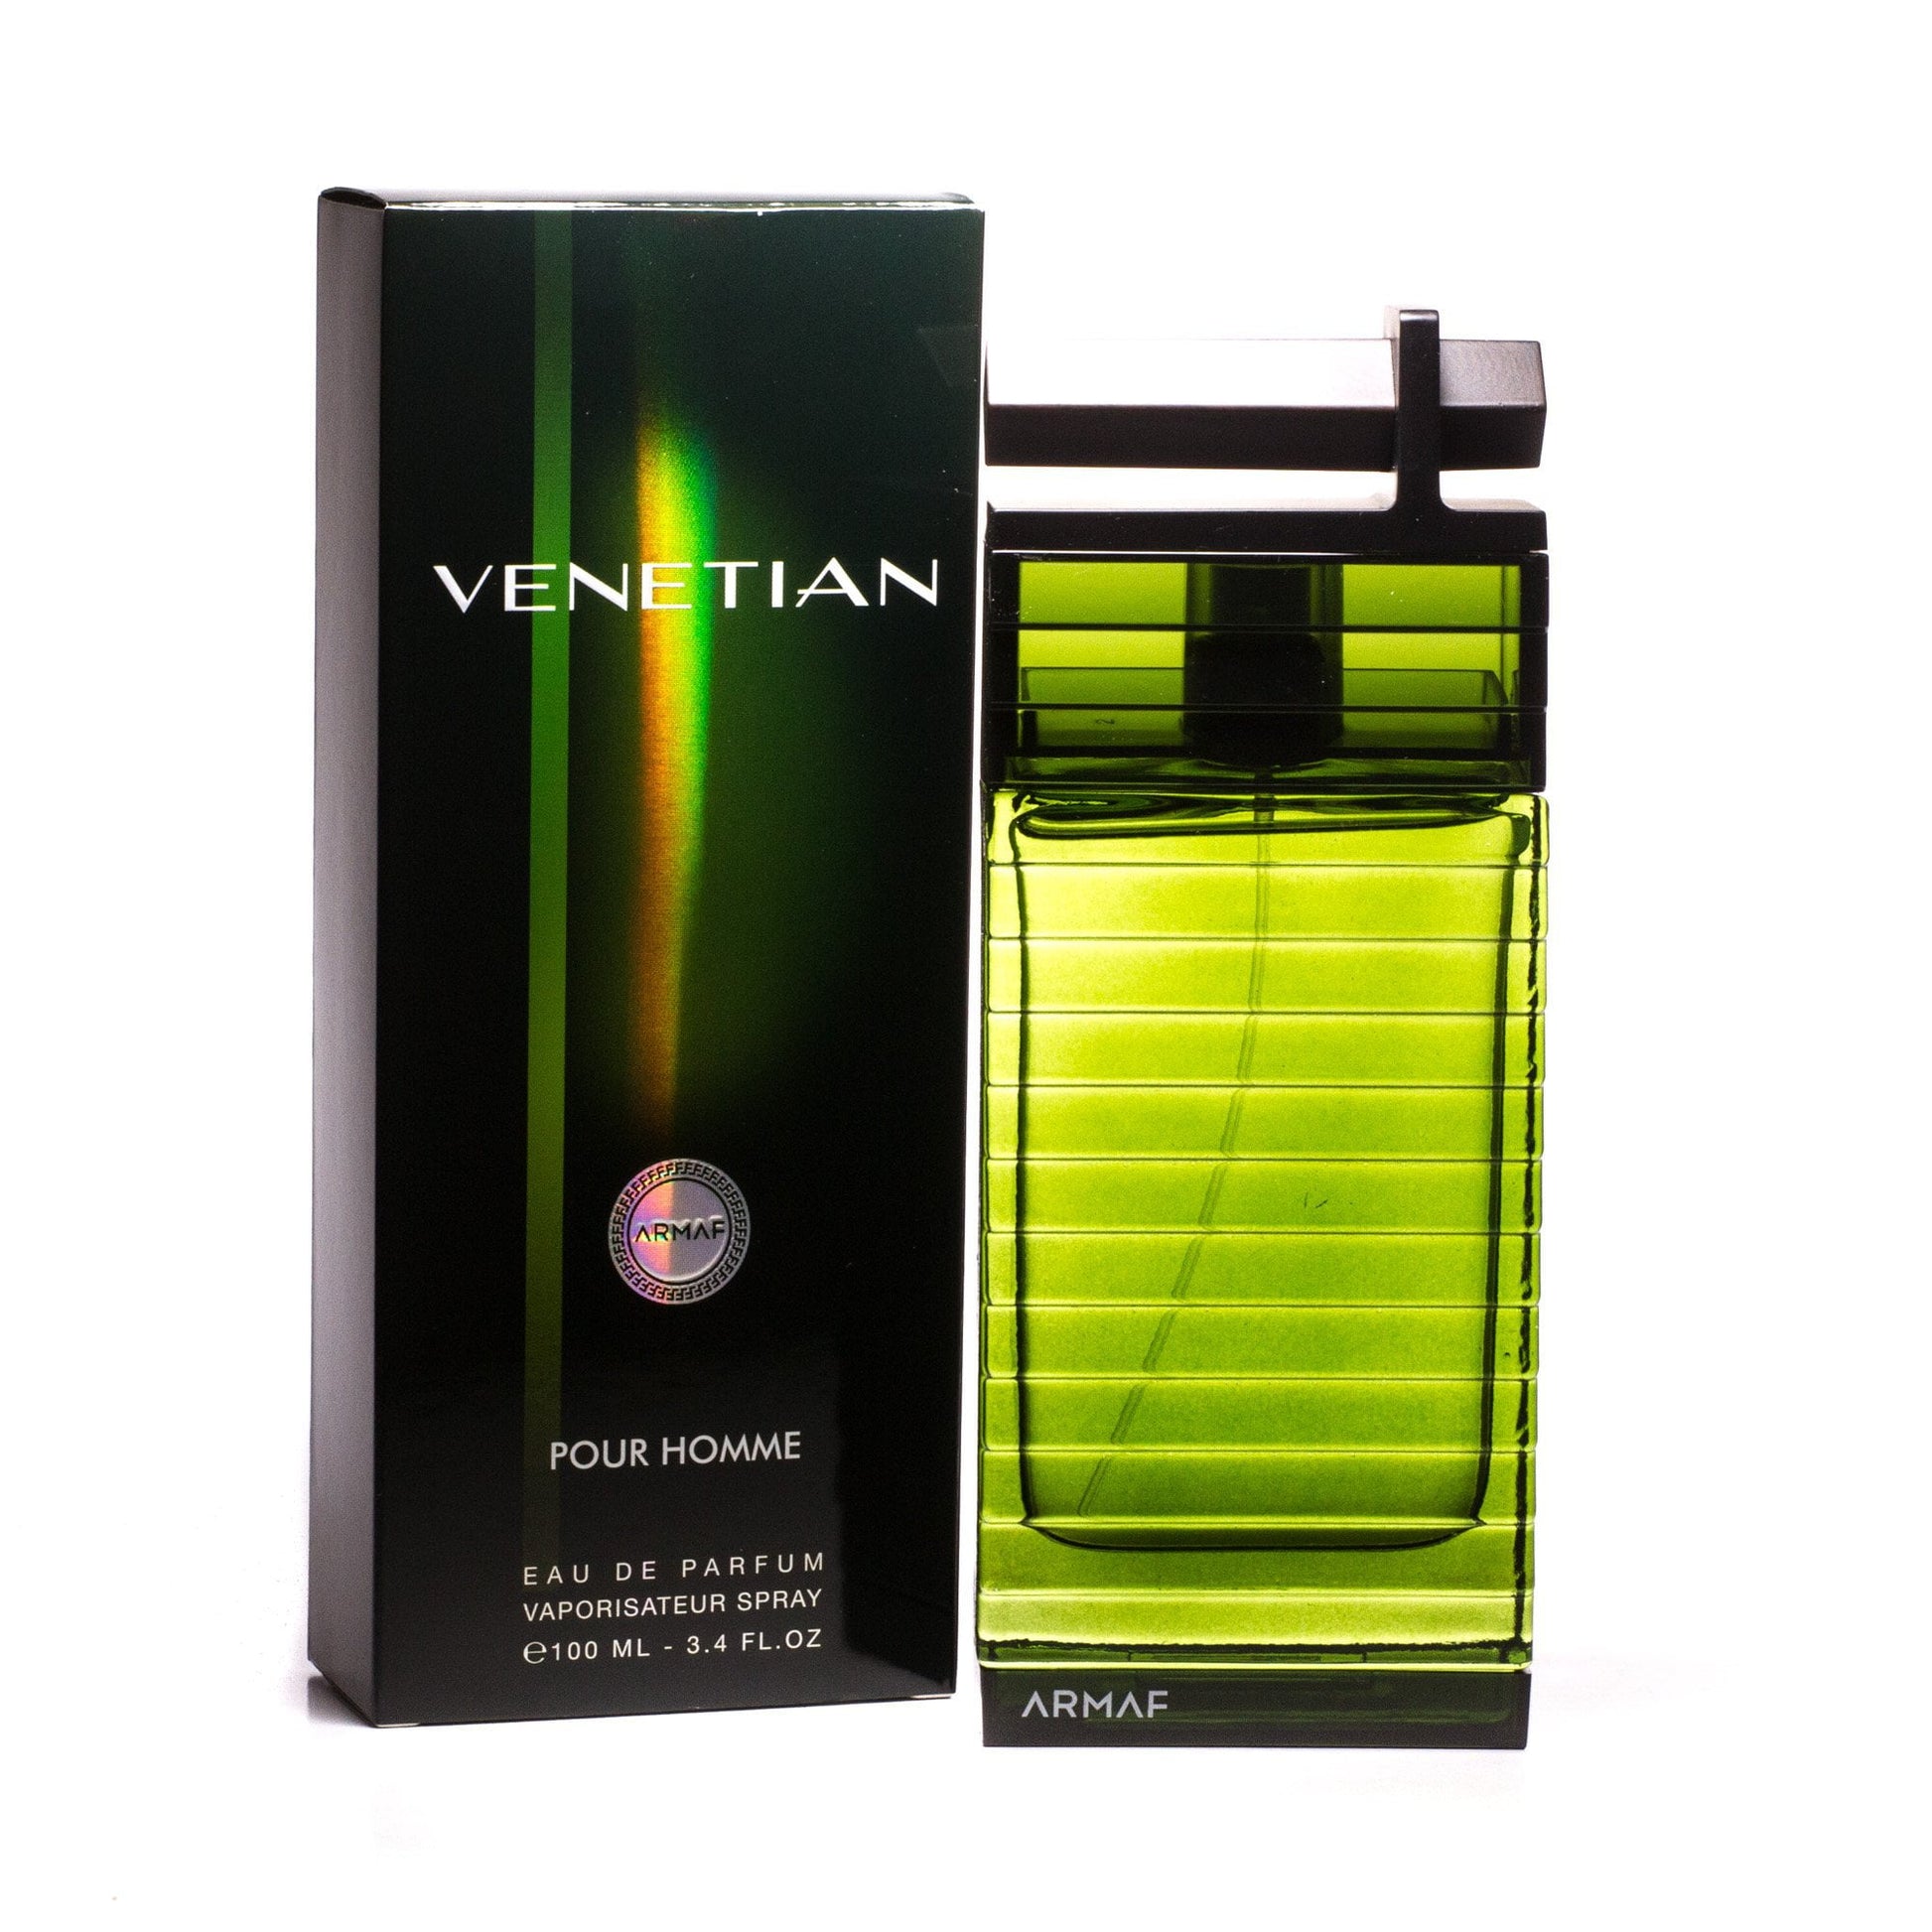 Venetian Eau de Parfum Spray for Men, Product image 1